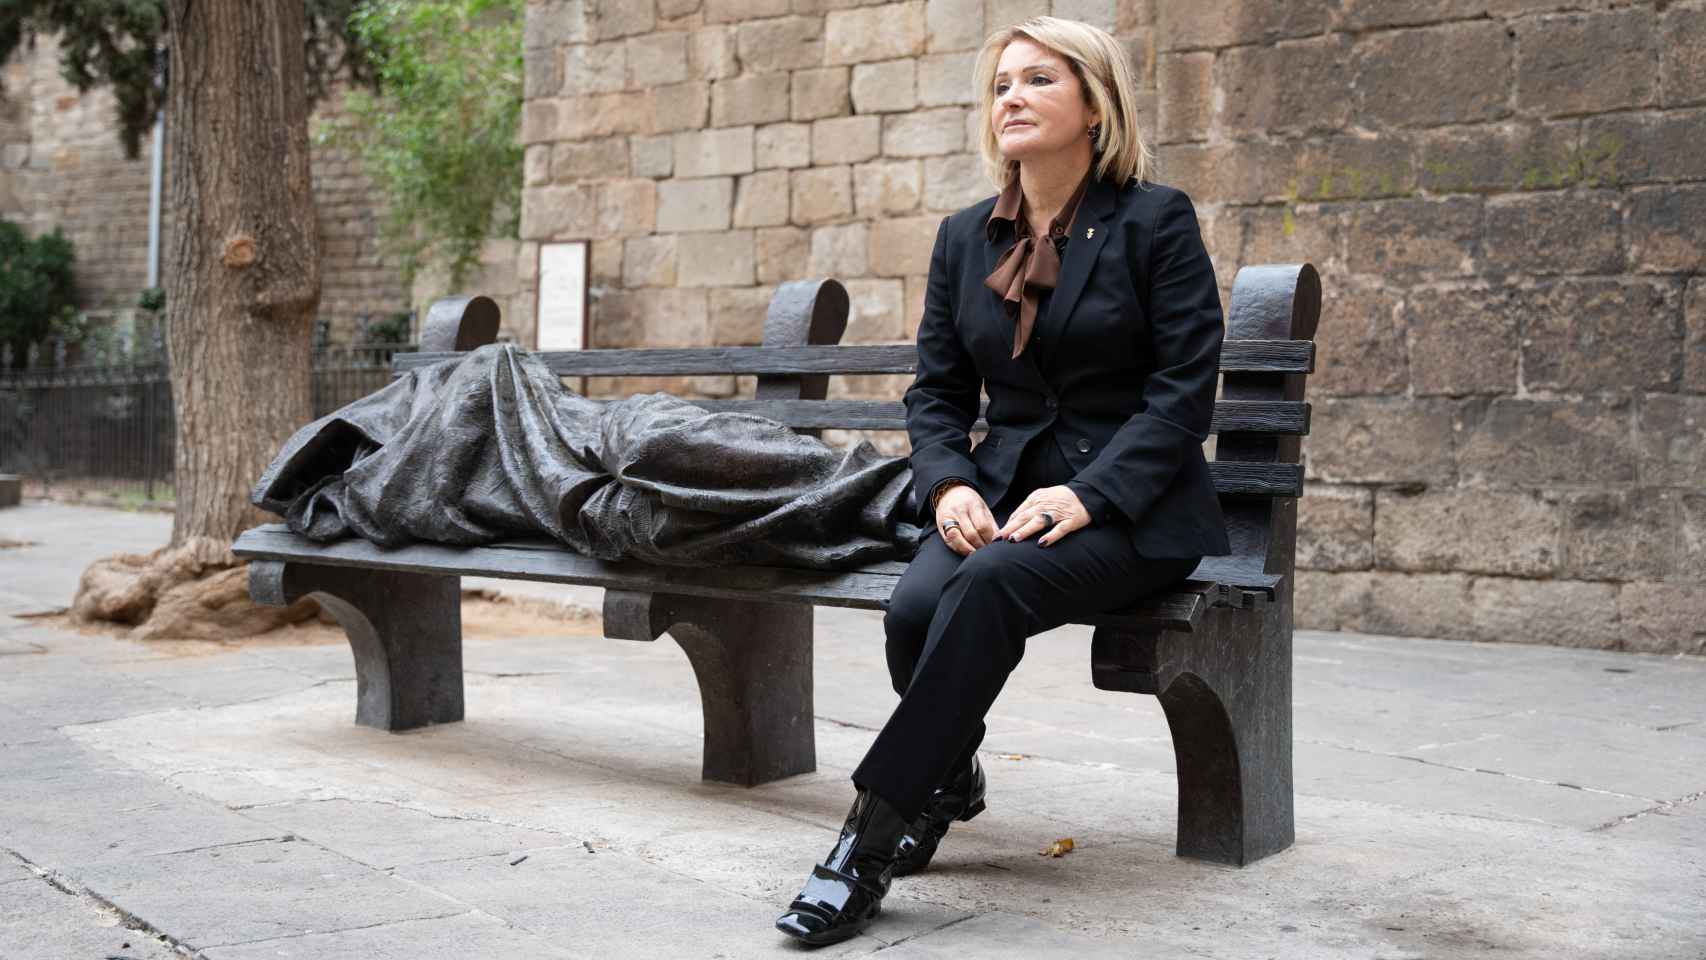 Cruz Celdrán posa en un banco frente a la parroquia de Santa Anna, en Barcelona.